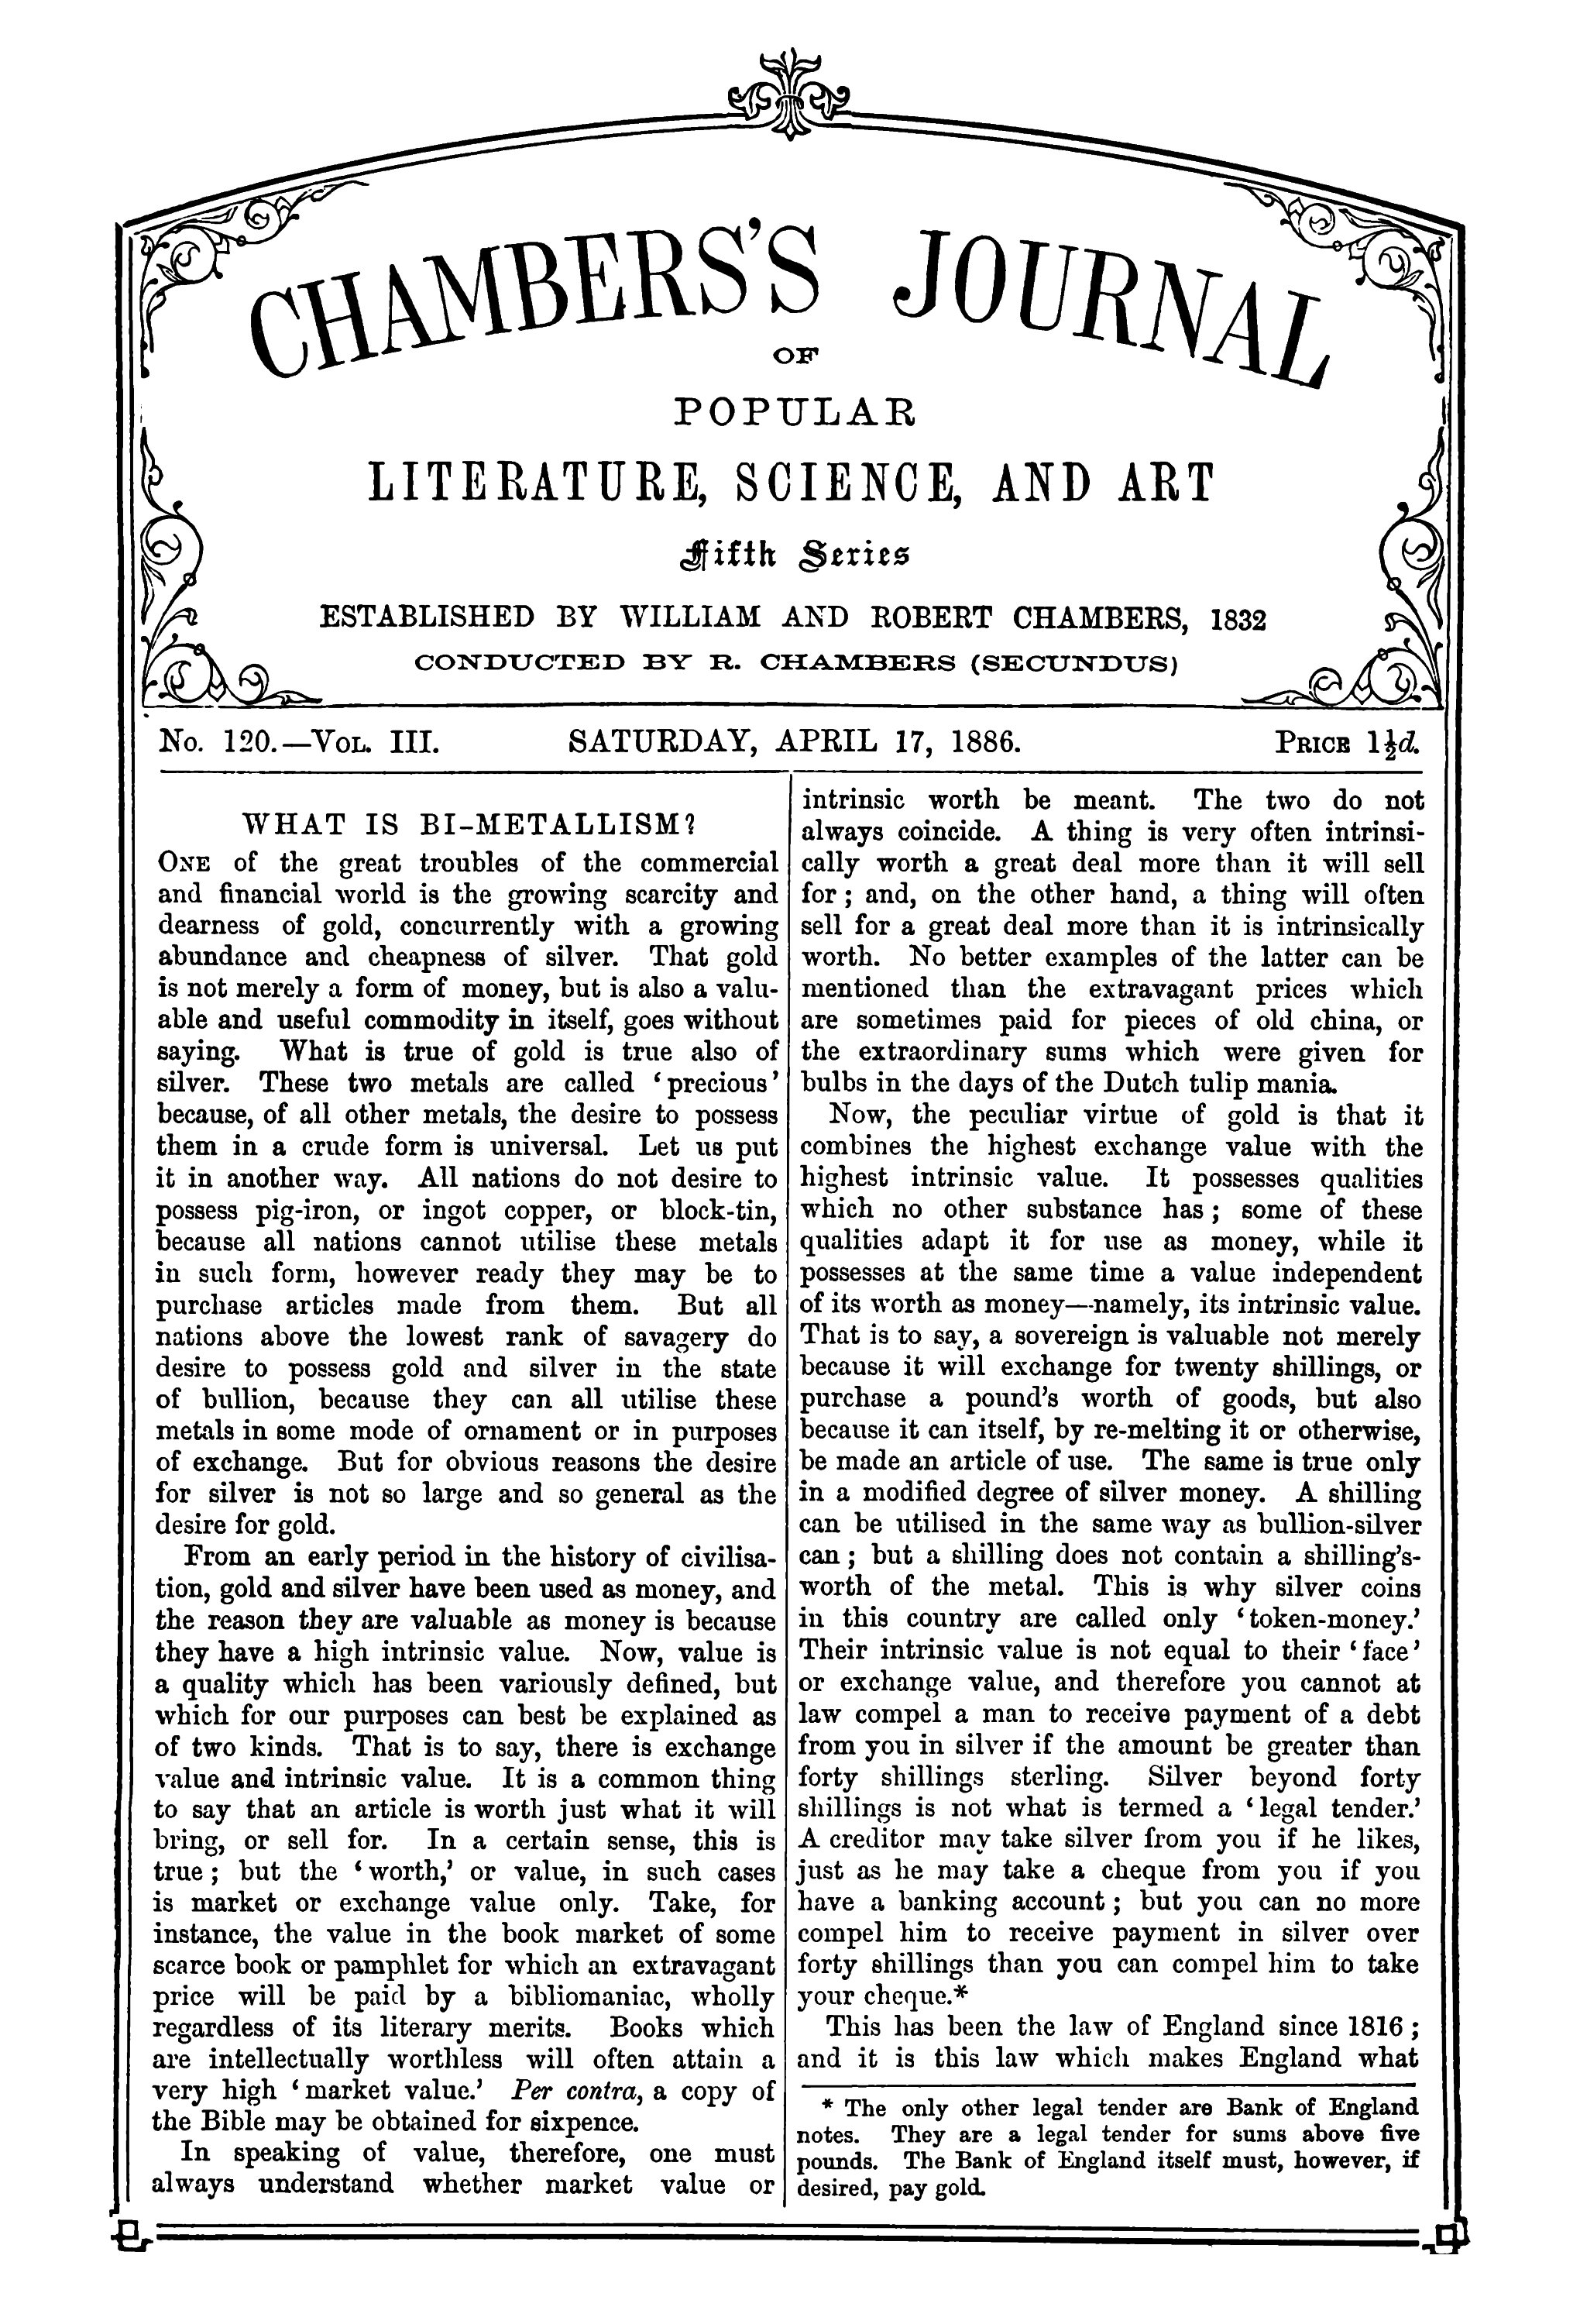 Popüler Edebiyat, Bilim ve Sanat Dergisi Chambers, beşinci seri, sayı 120, cilt III, 17 Nisan 1886